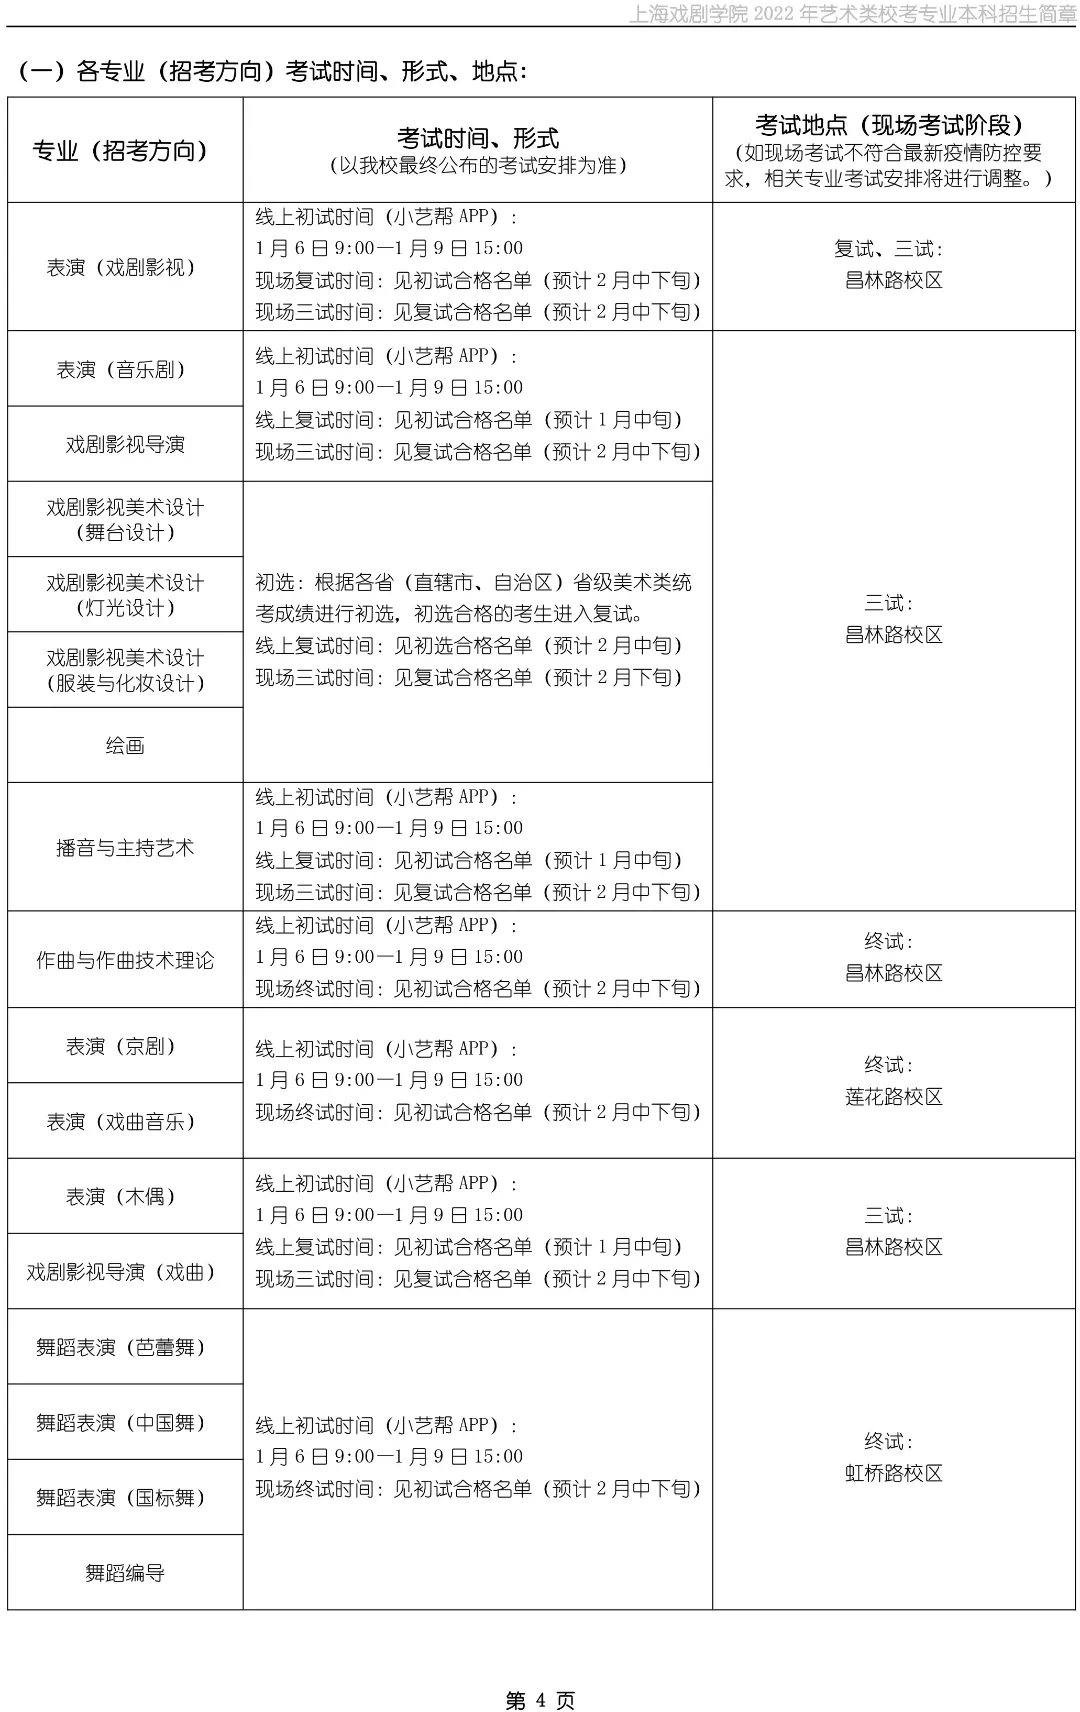 上海戏剧学院2022年艺术类校考专业本科招生简章